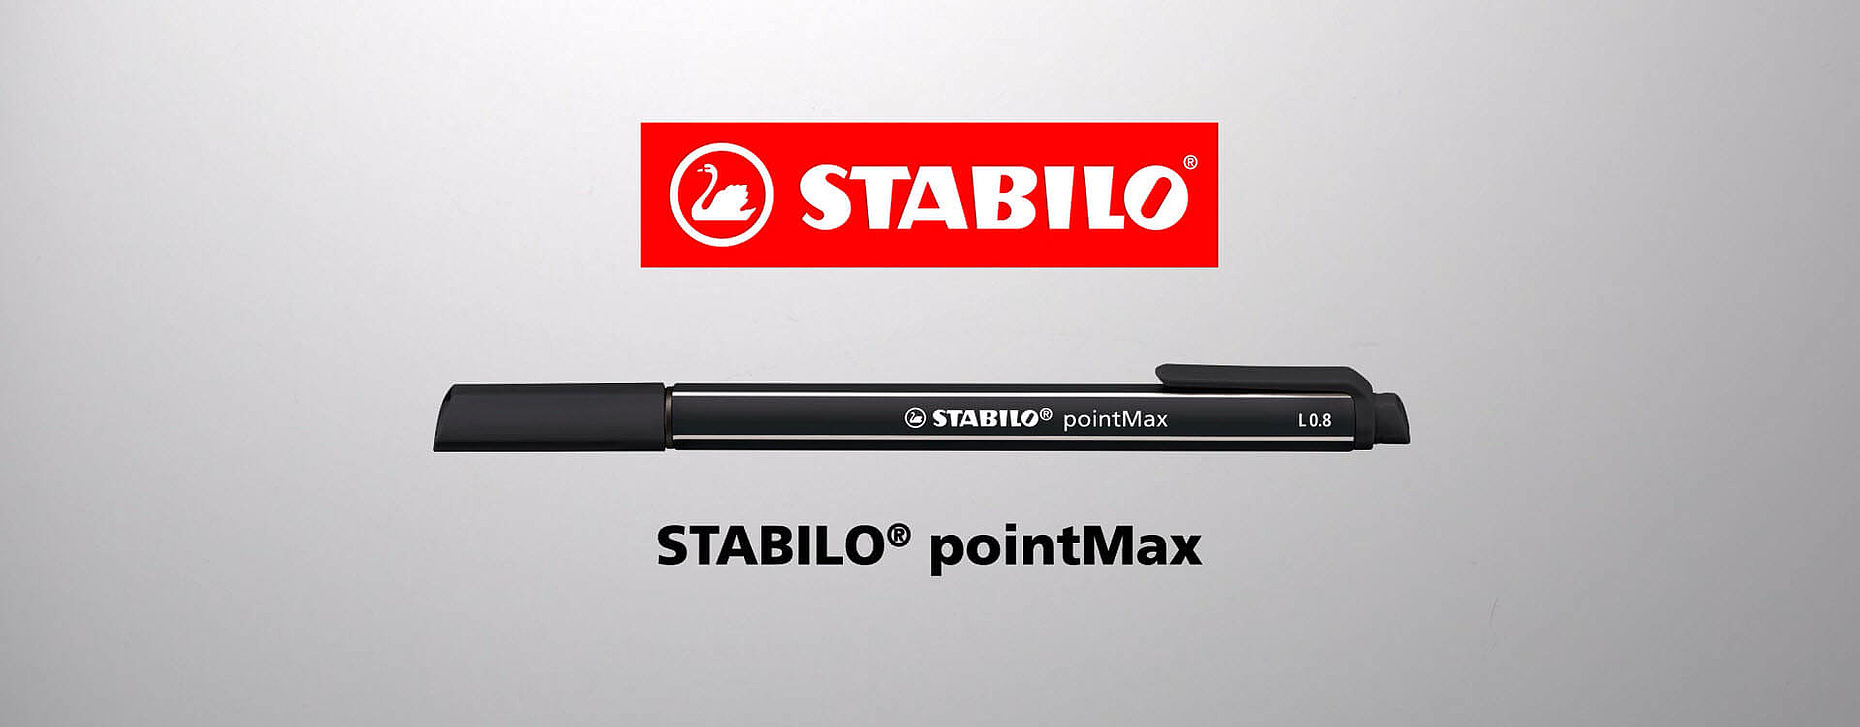 Penna in nylon STABILO pointMax - www.stabilo.it